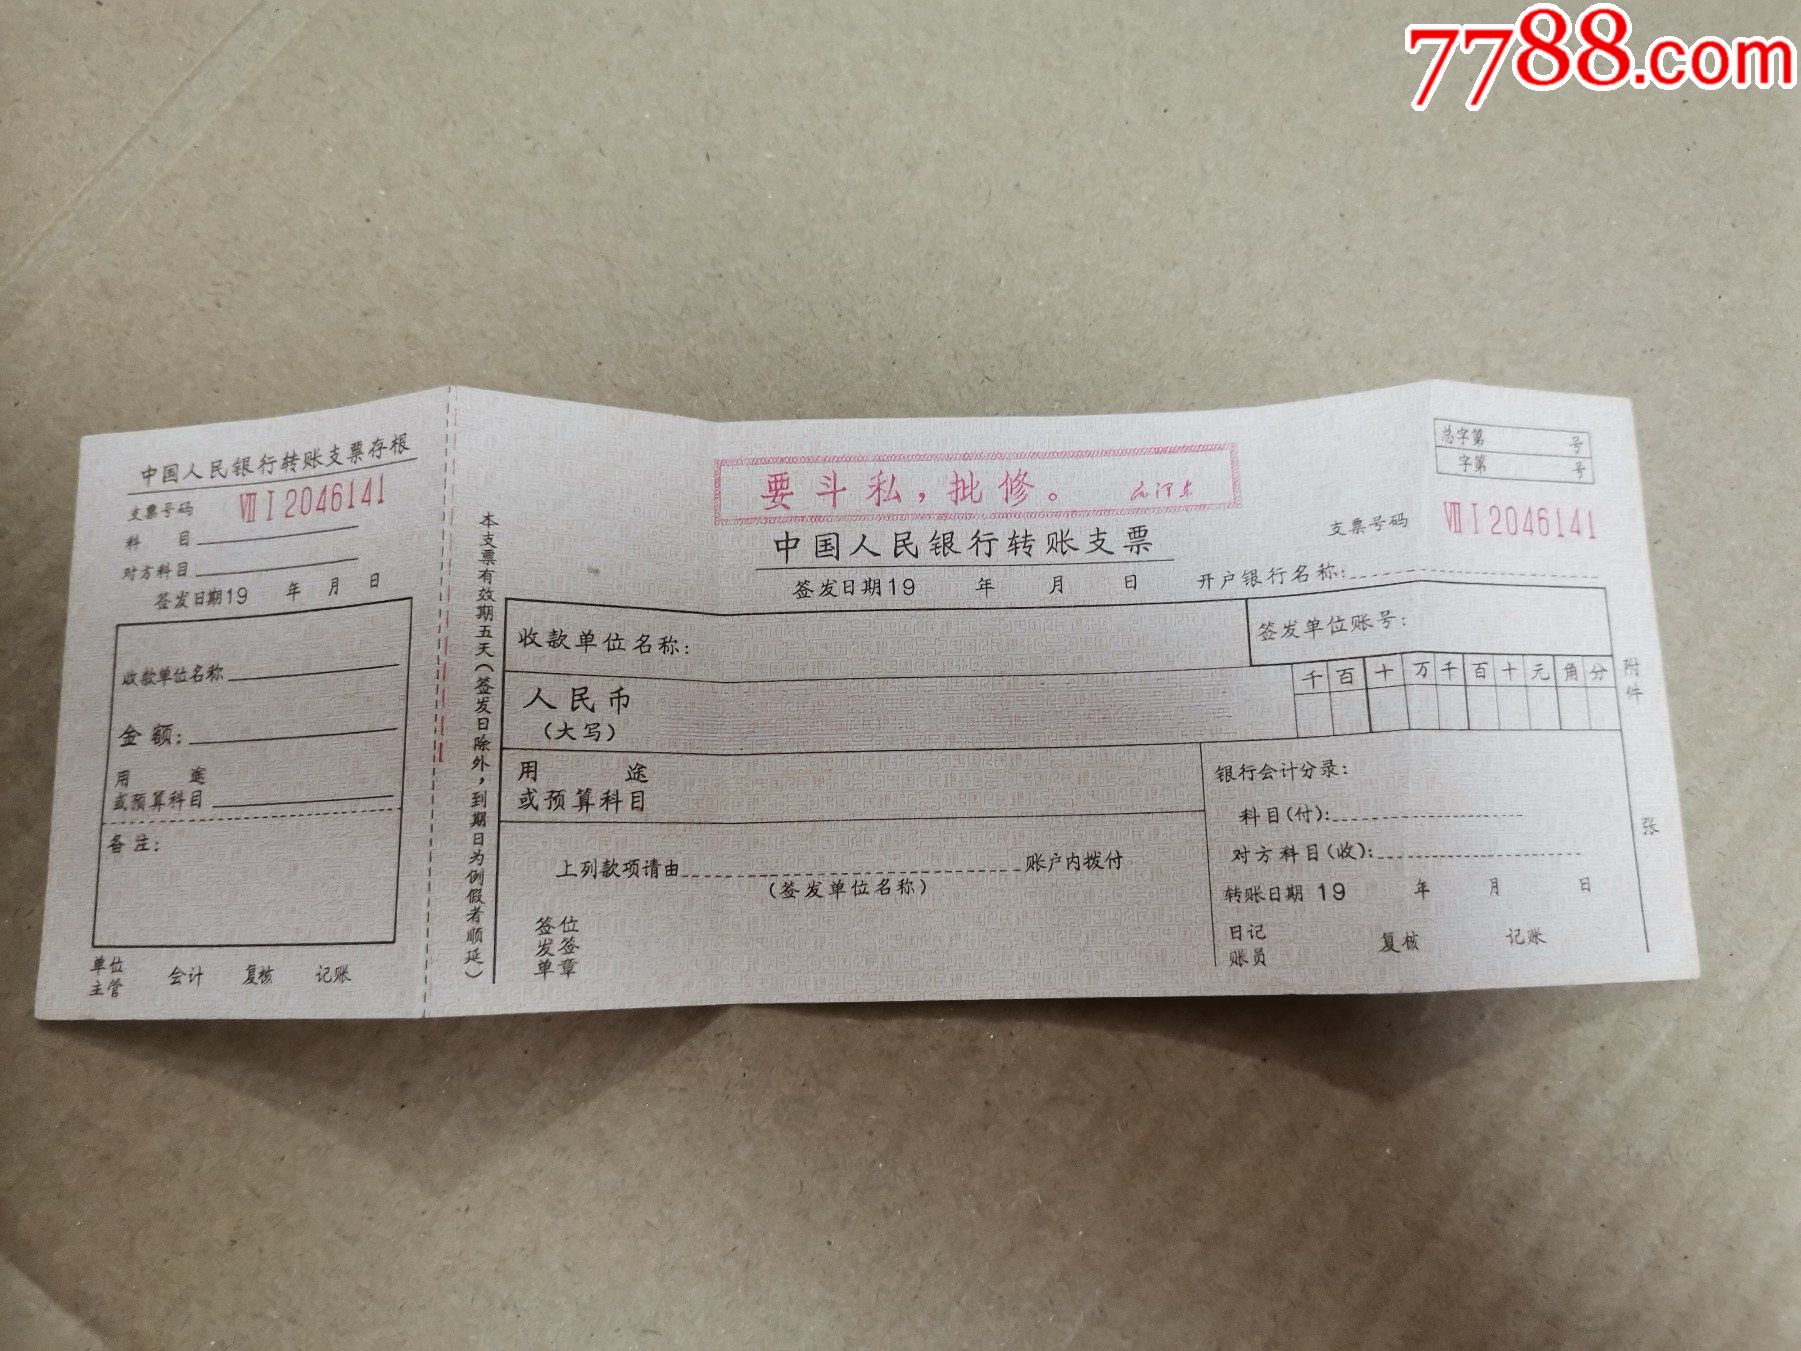 文革带语录的中国人民银行支票空白